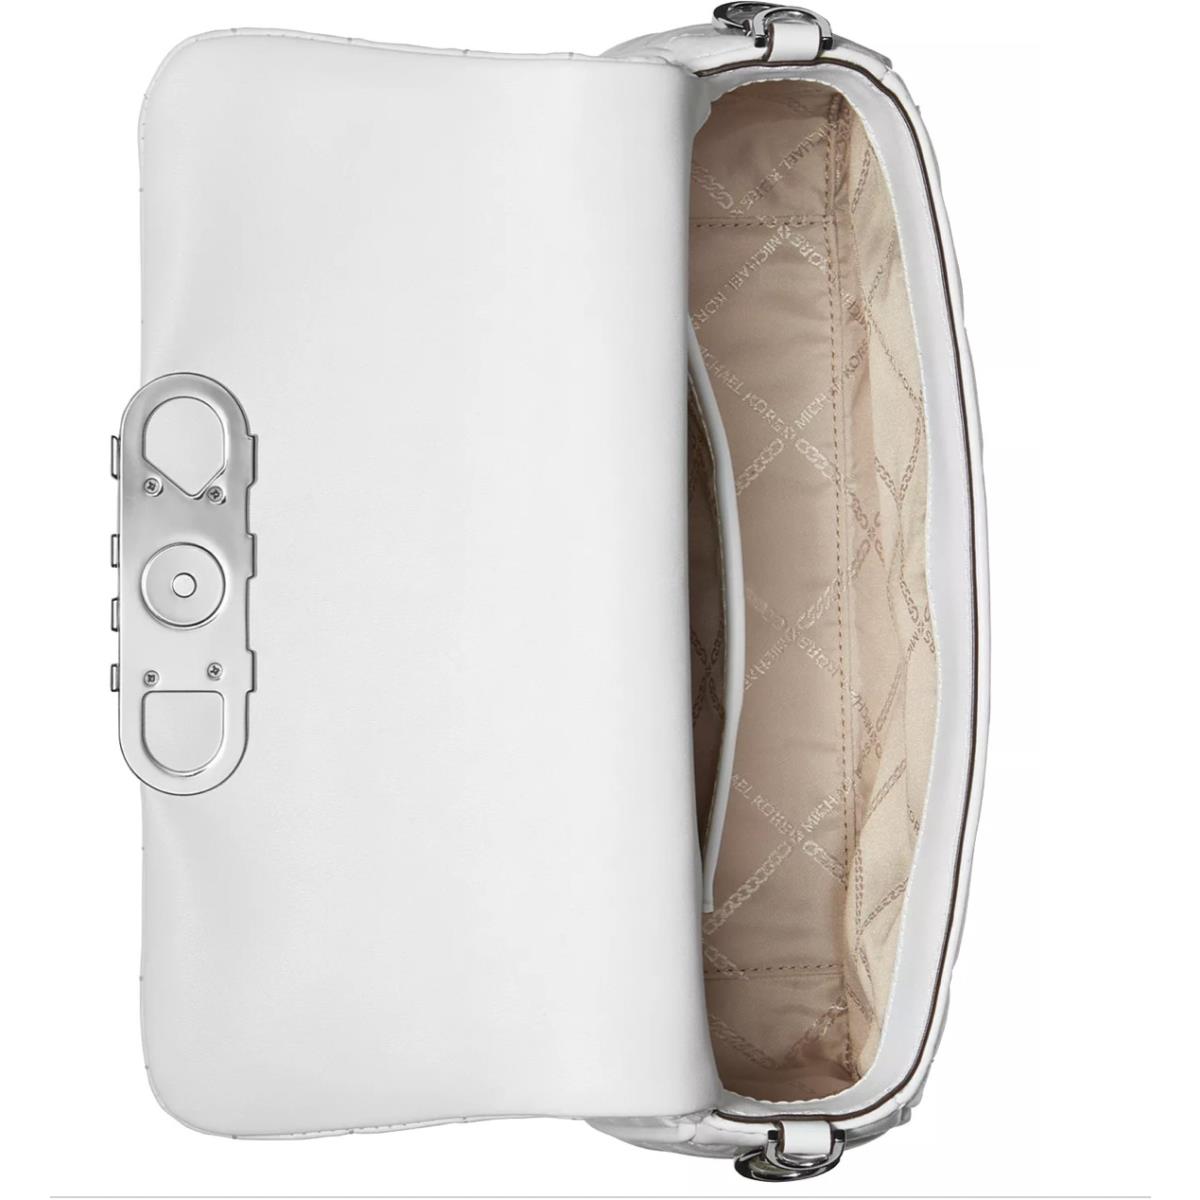 Michael Kors Parker Medium Leather Convertible Pouchette Shoulder Bag